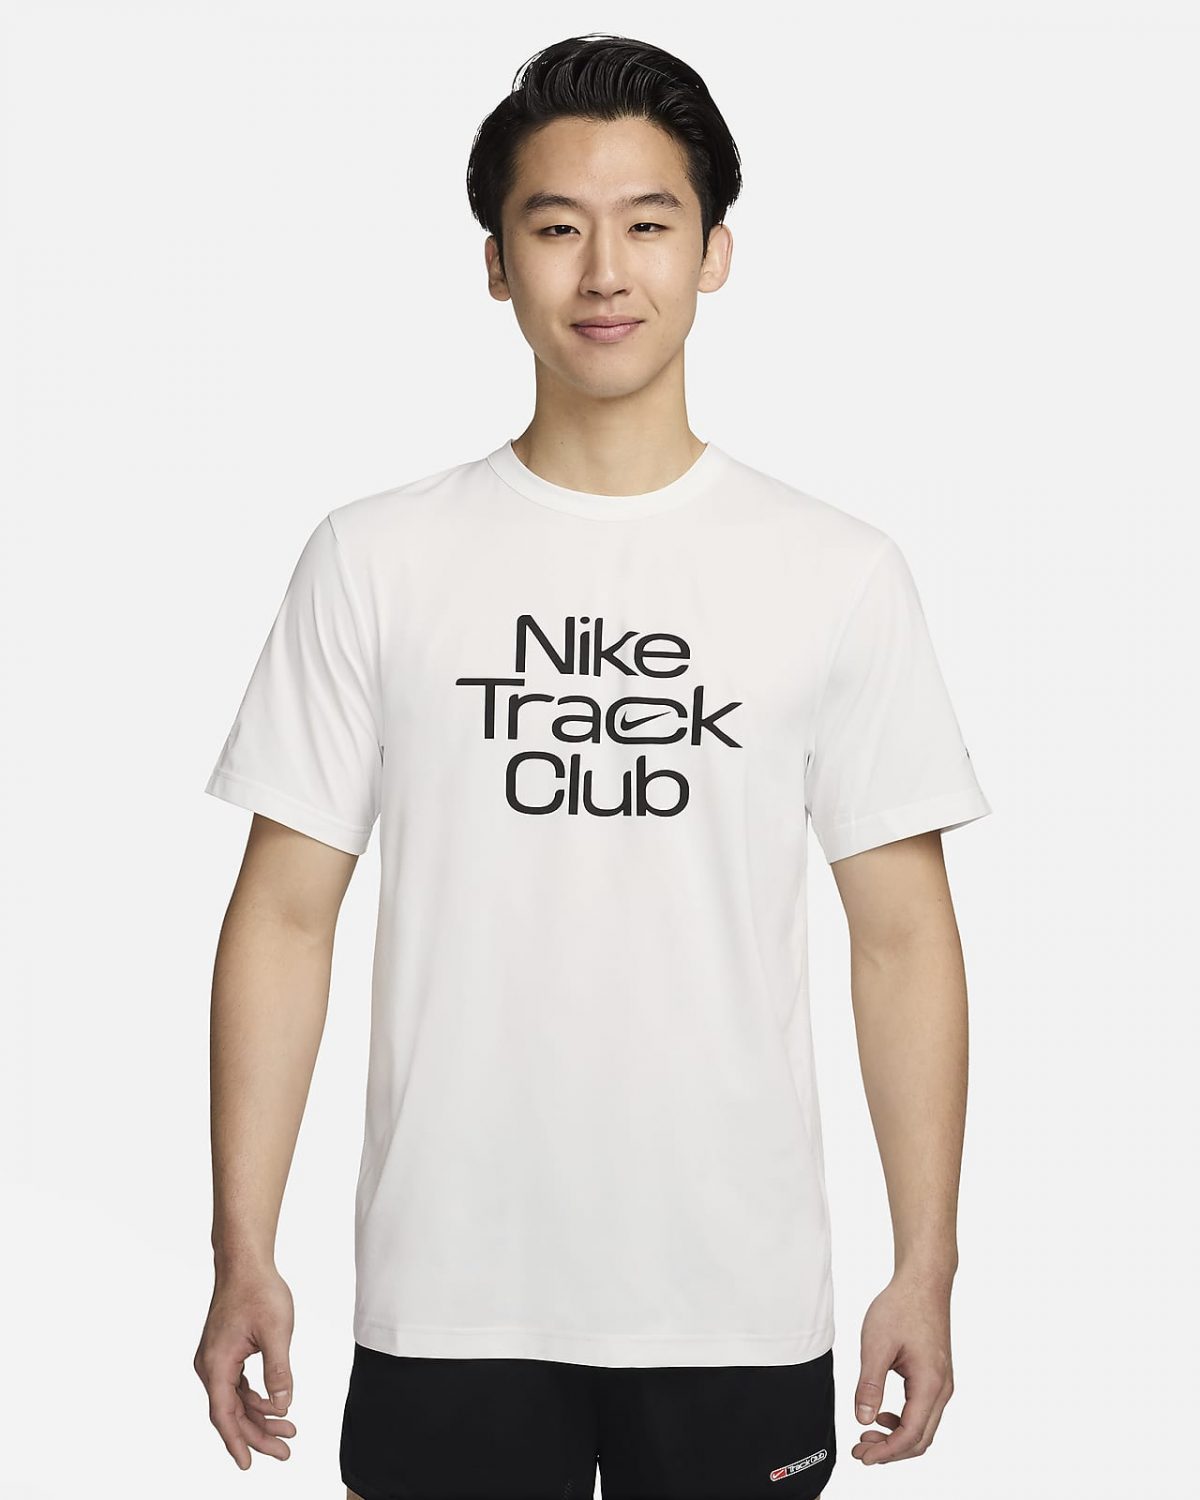 Мужской топ Nike Track Club фото